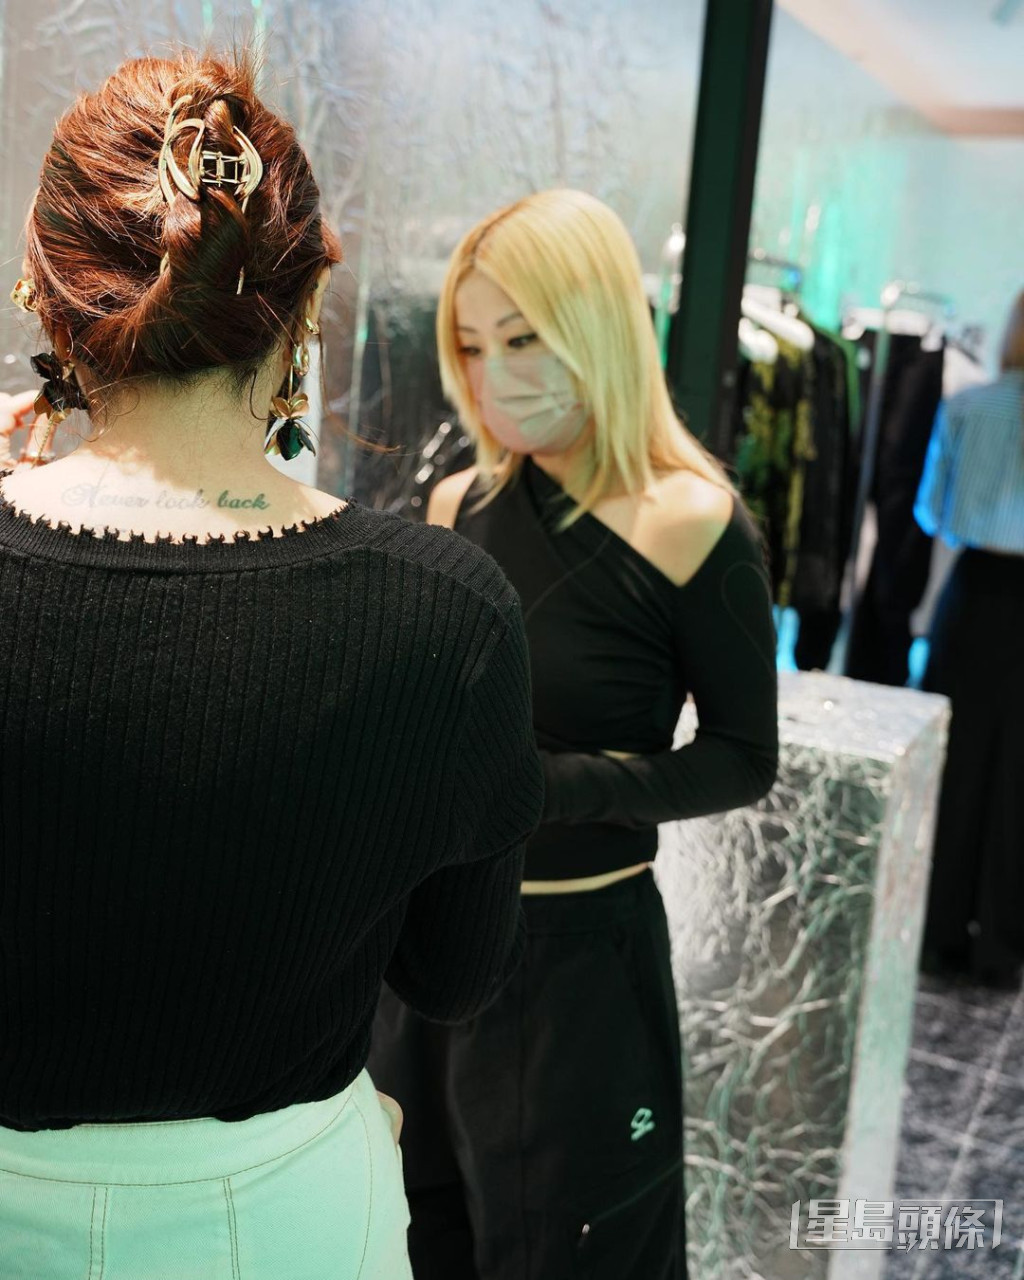 上周四晚（24日），徐濠萦时装店举行新品发布会，全身黑色现身相当有型。